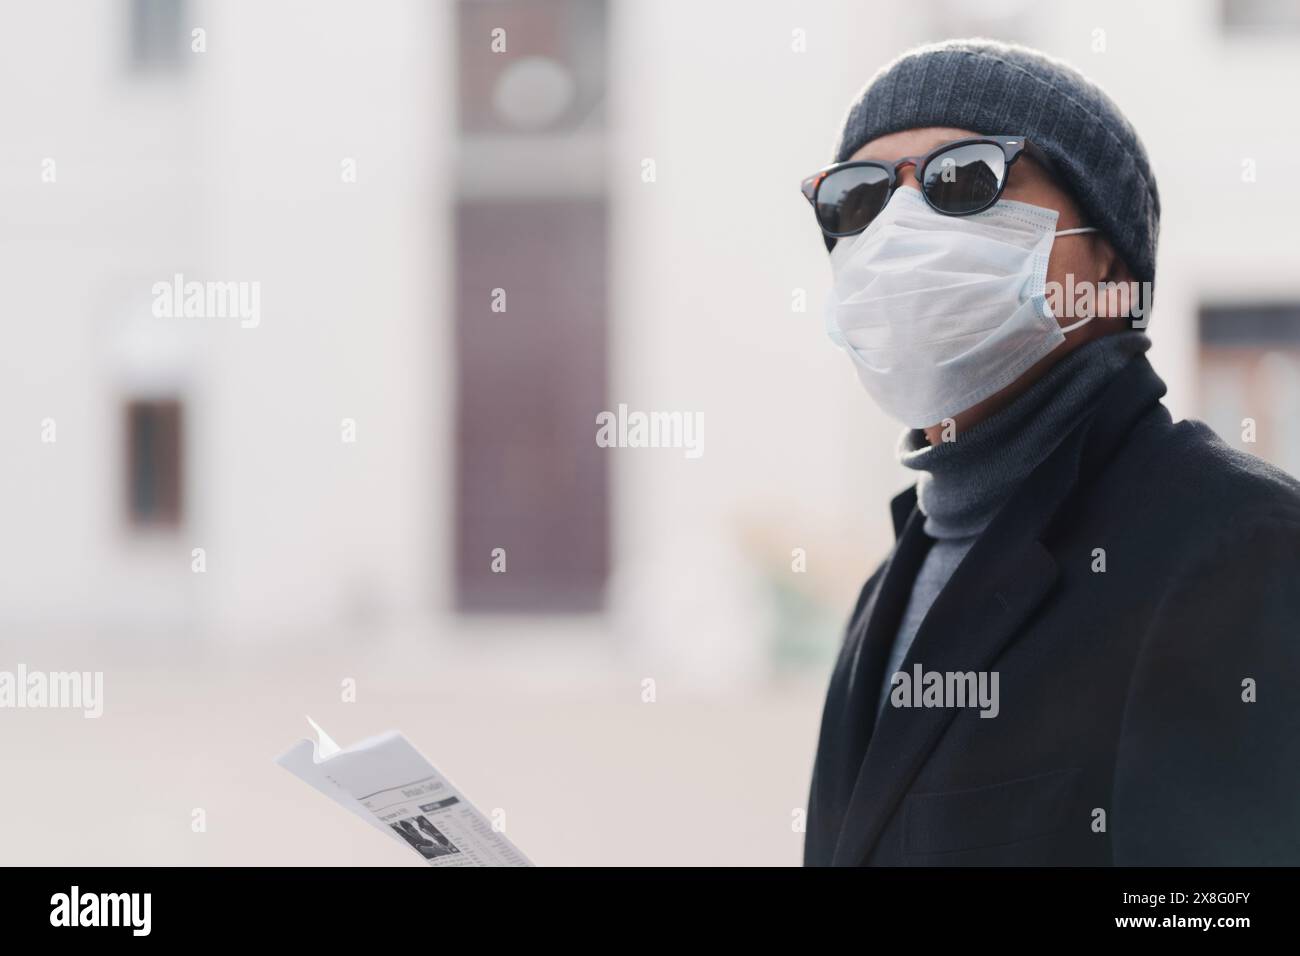 Ein Stadtforscher in Maske und Sonnenbrille schaut diskret seine Zeitung. Stockfoto